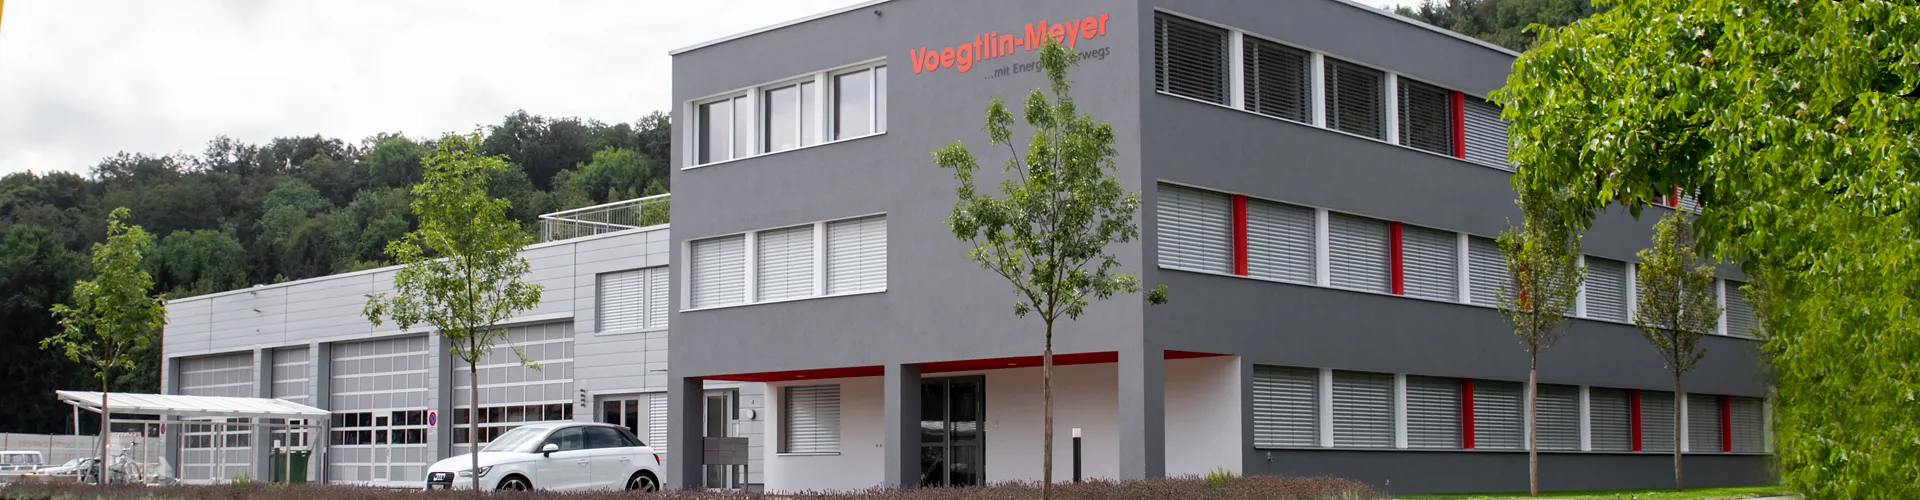 Voegtlin-Meyer AG